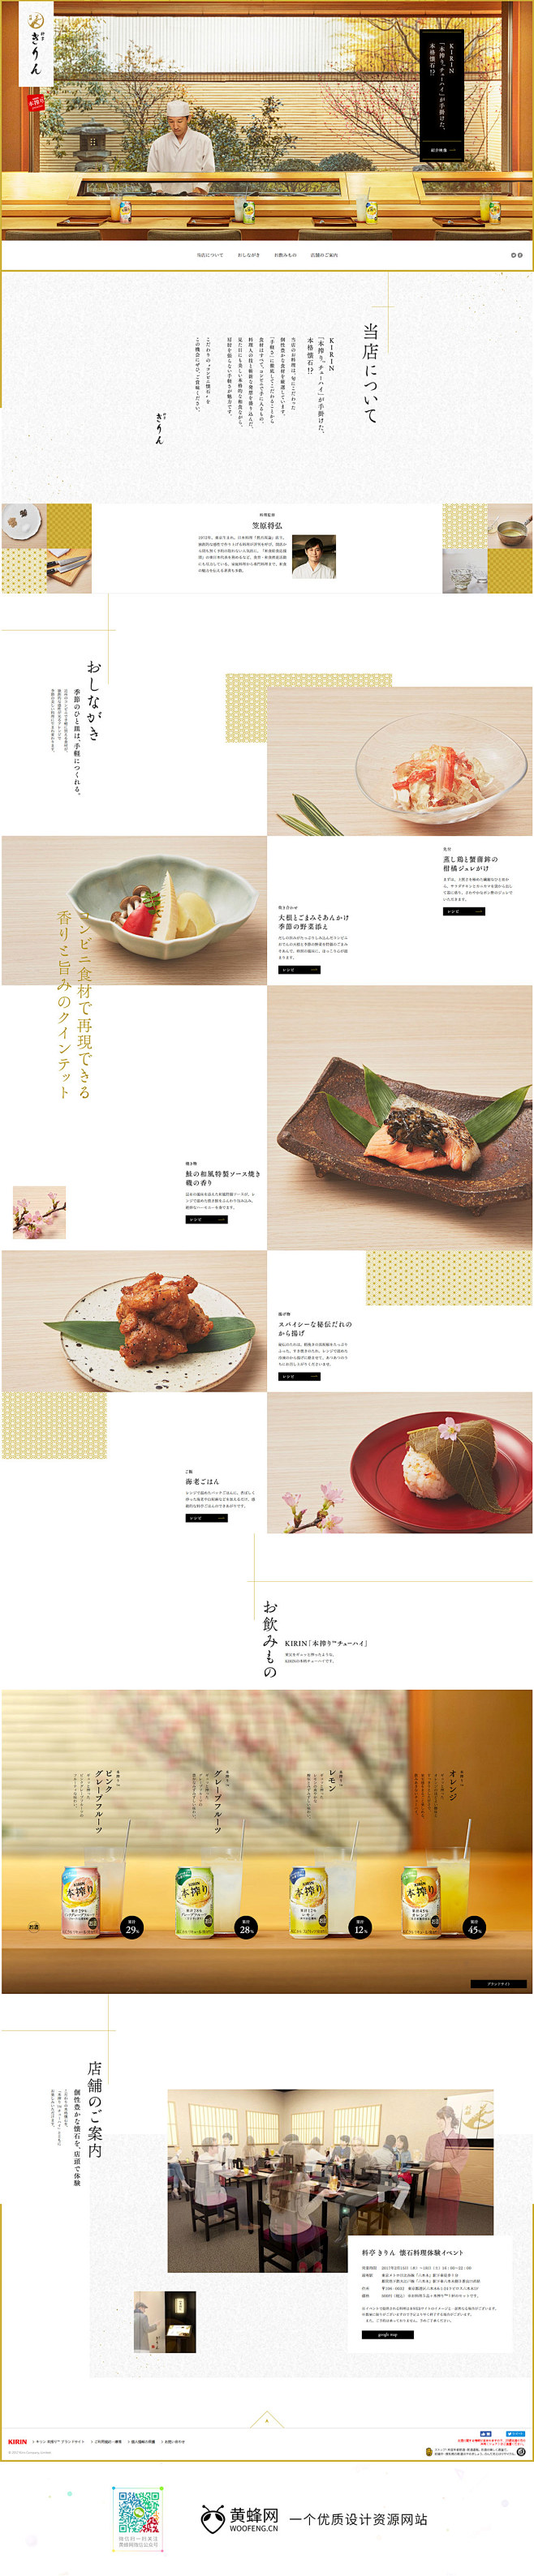 KIRIN日本美食网站 来源自黄蜂网ht...